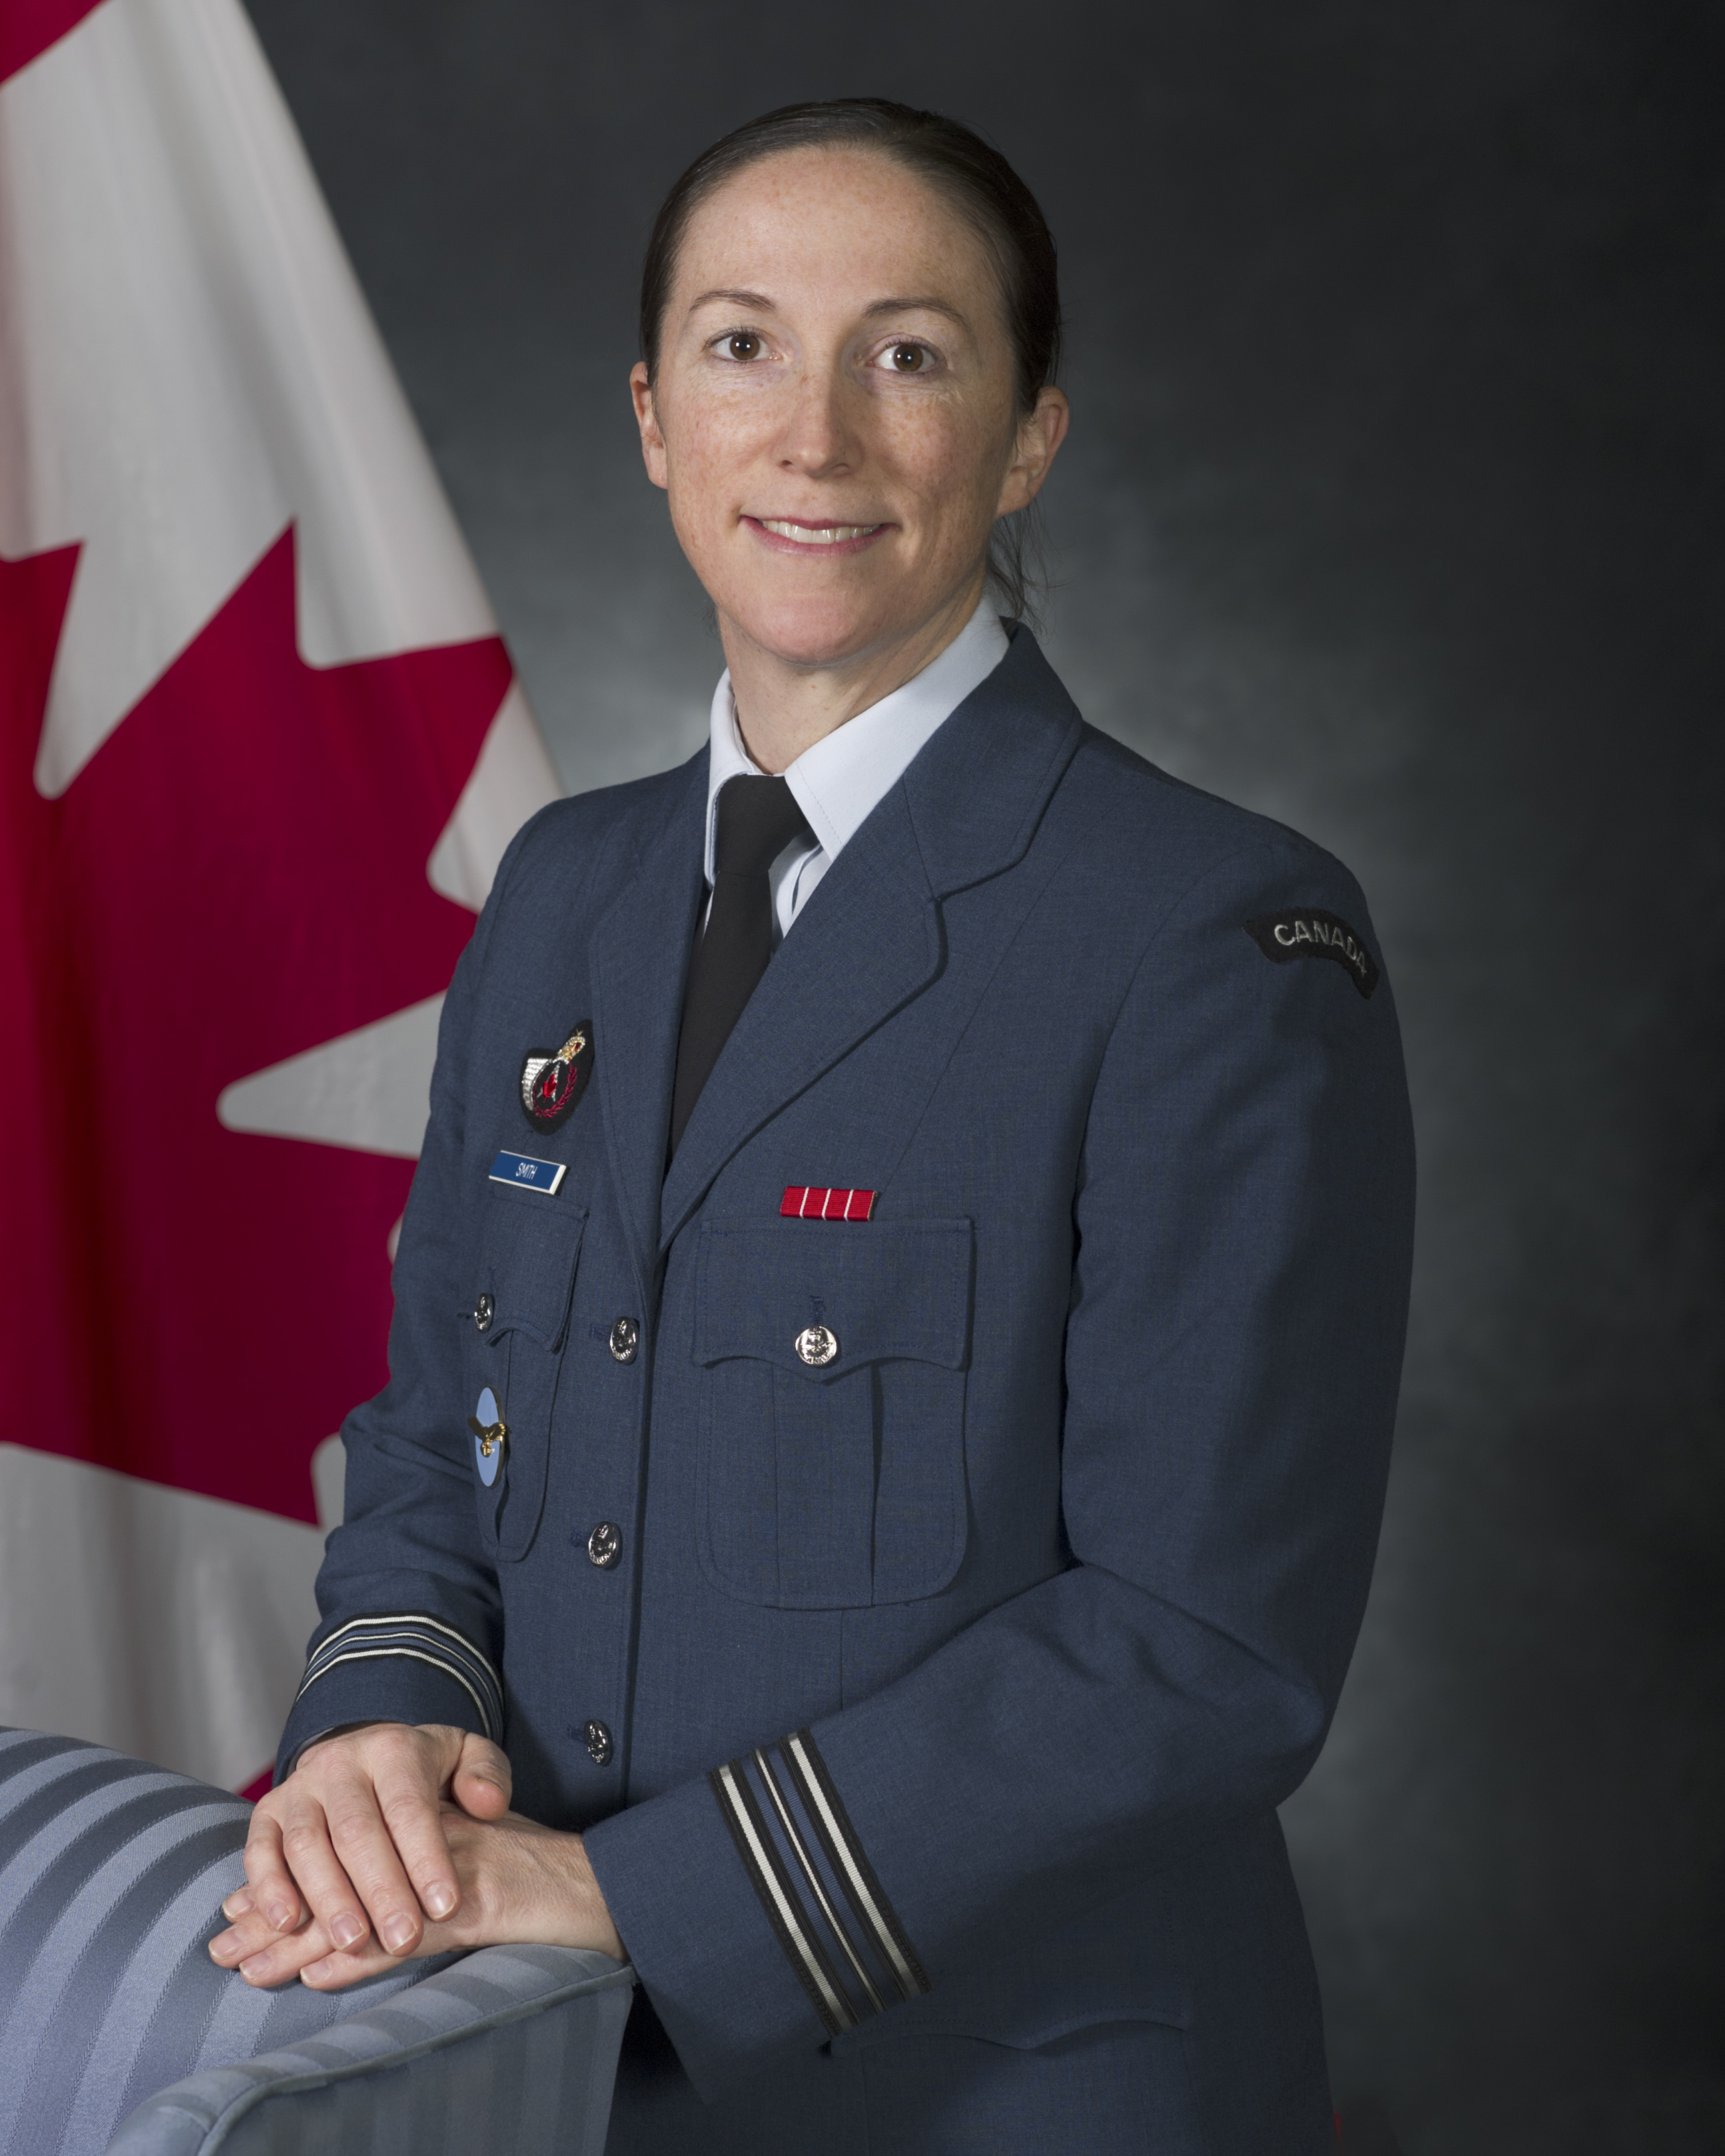 Une femme souriante vêtue d’un uniforme militaire bleu se tient devant un drapeau du Canada, ses mains reposant sur une chaise bleue.